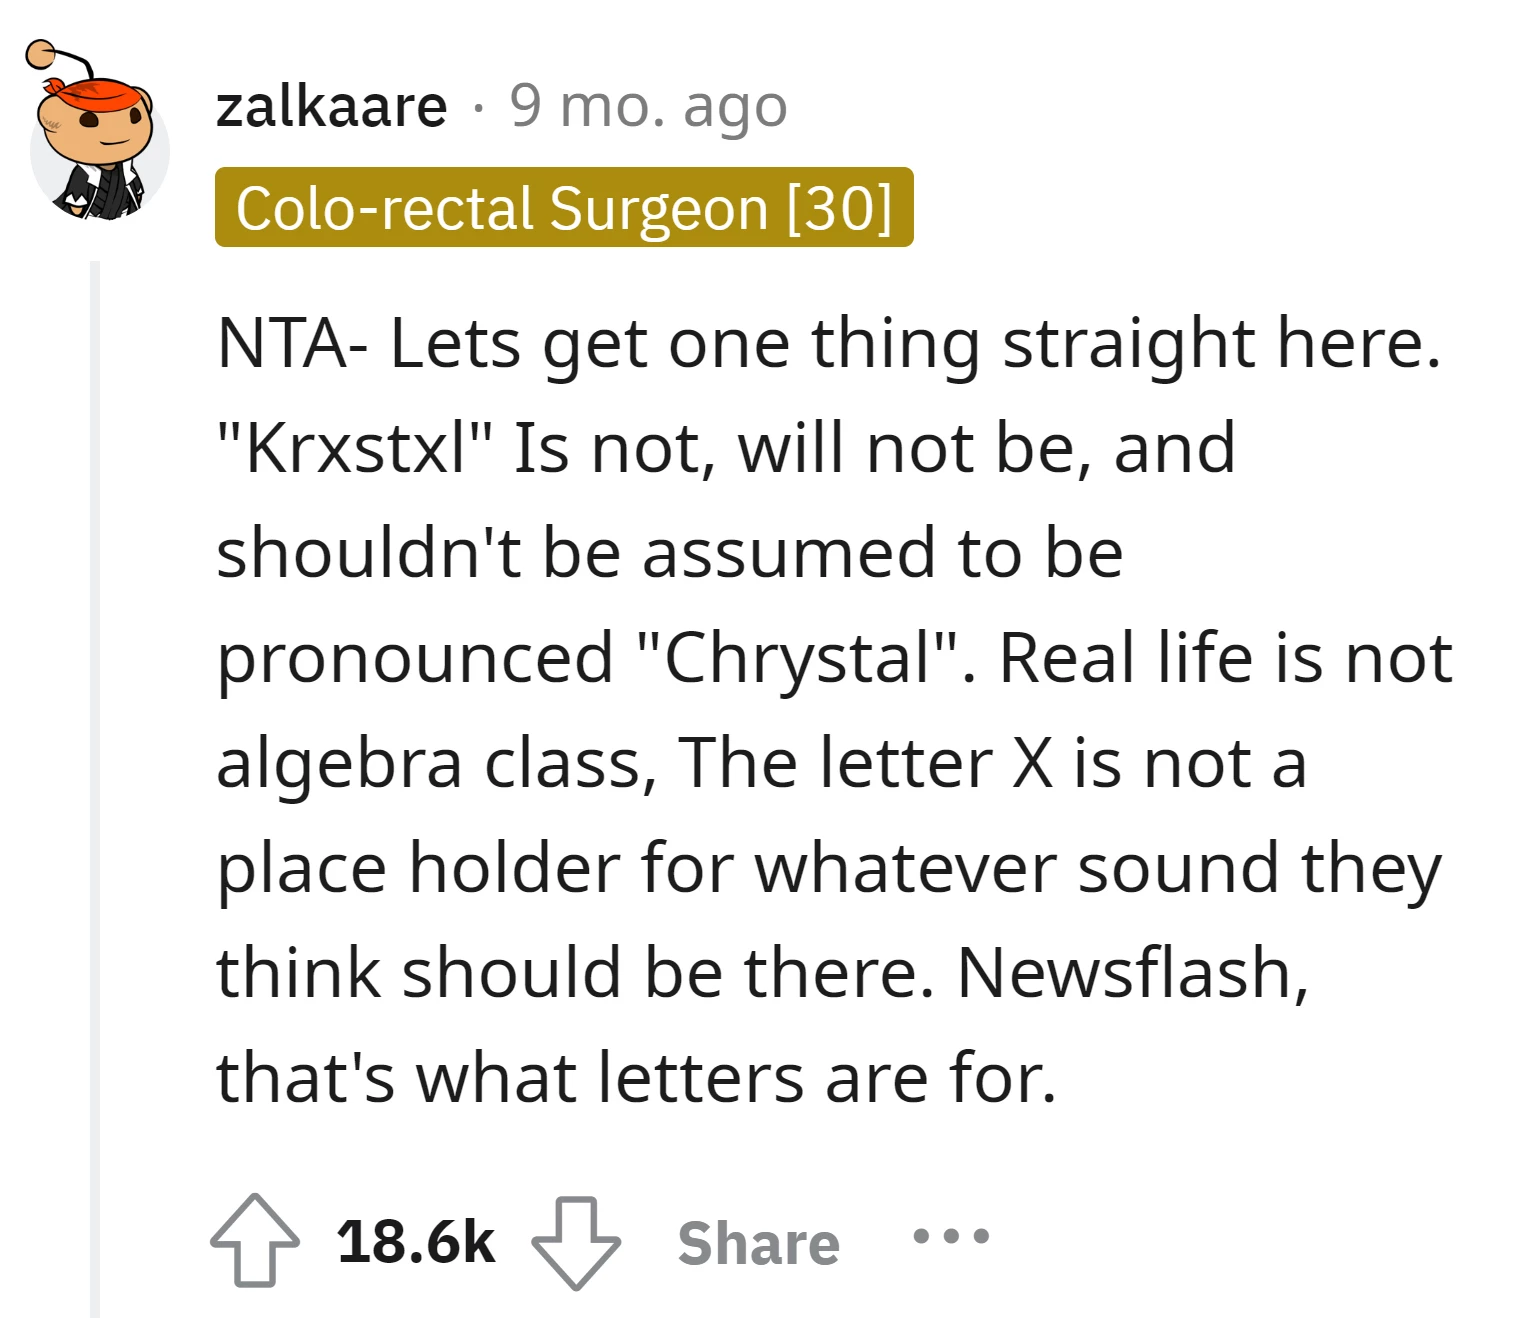 "Krxstxl" pronounced "Crystal" is not reasonable